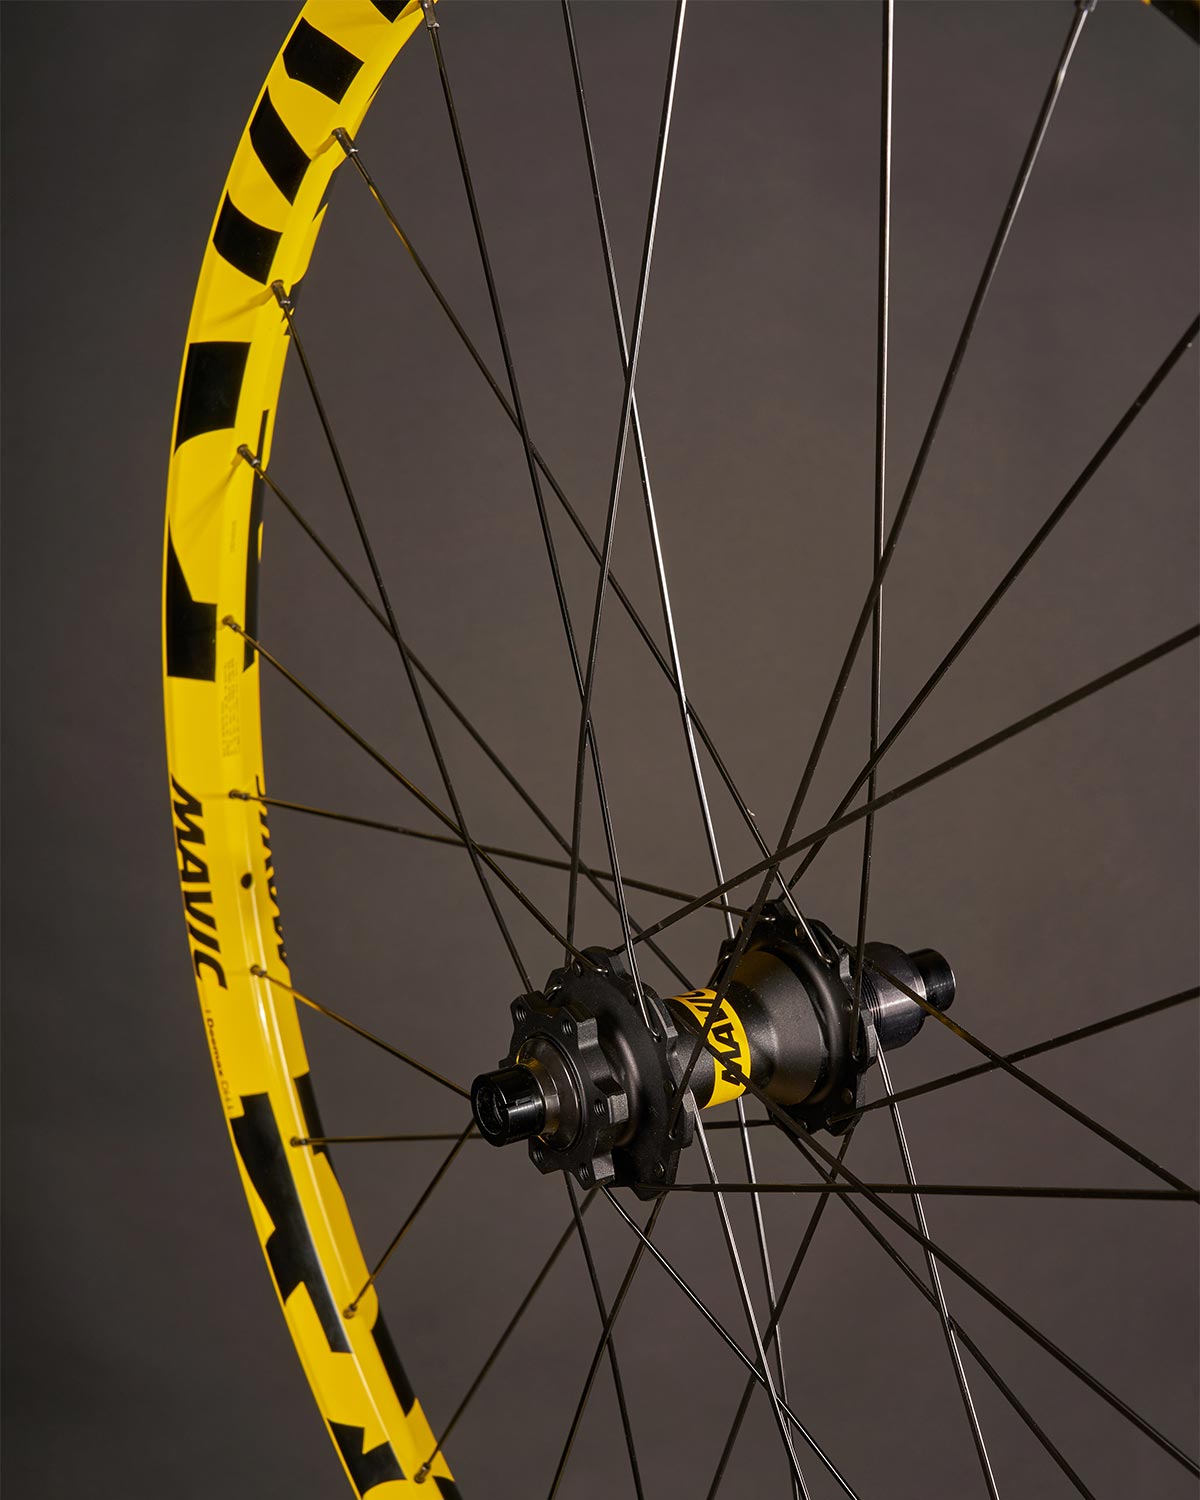 Mavic celebra el 25 aniversario de las ruedas Deemax DH con una edición limitada en el icónico color amarillo de la marca